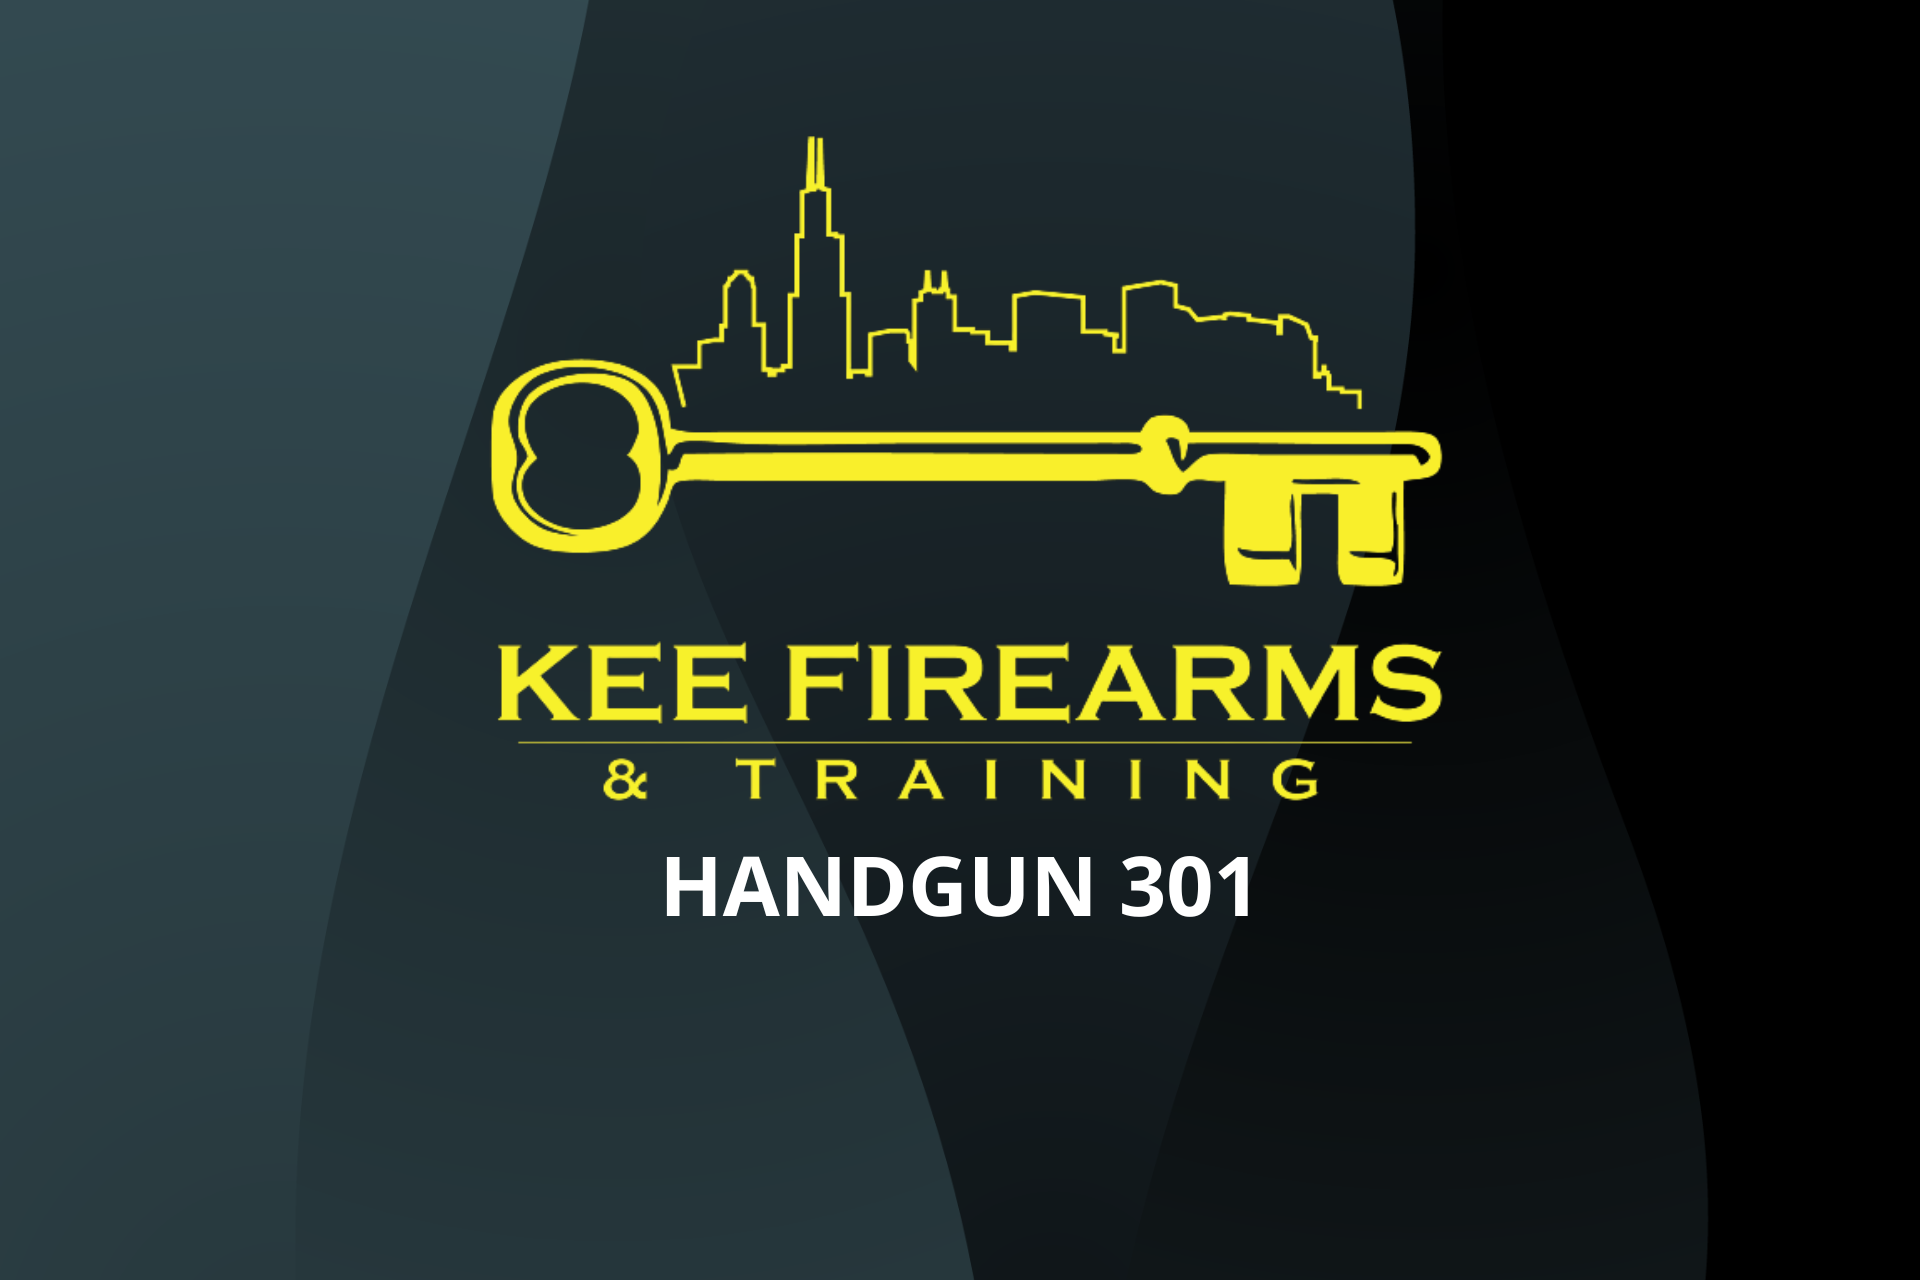 Handgun 301